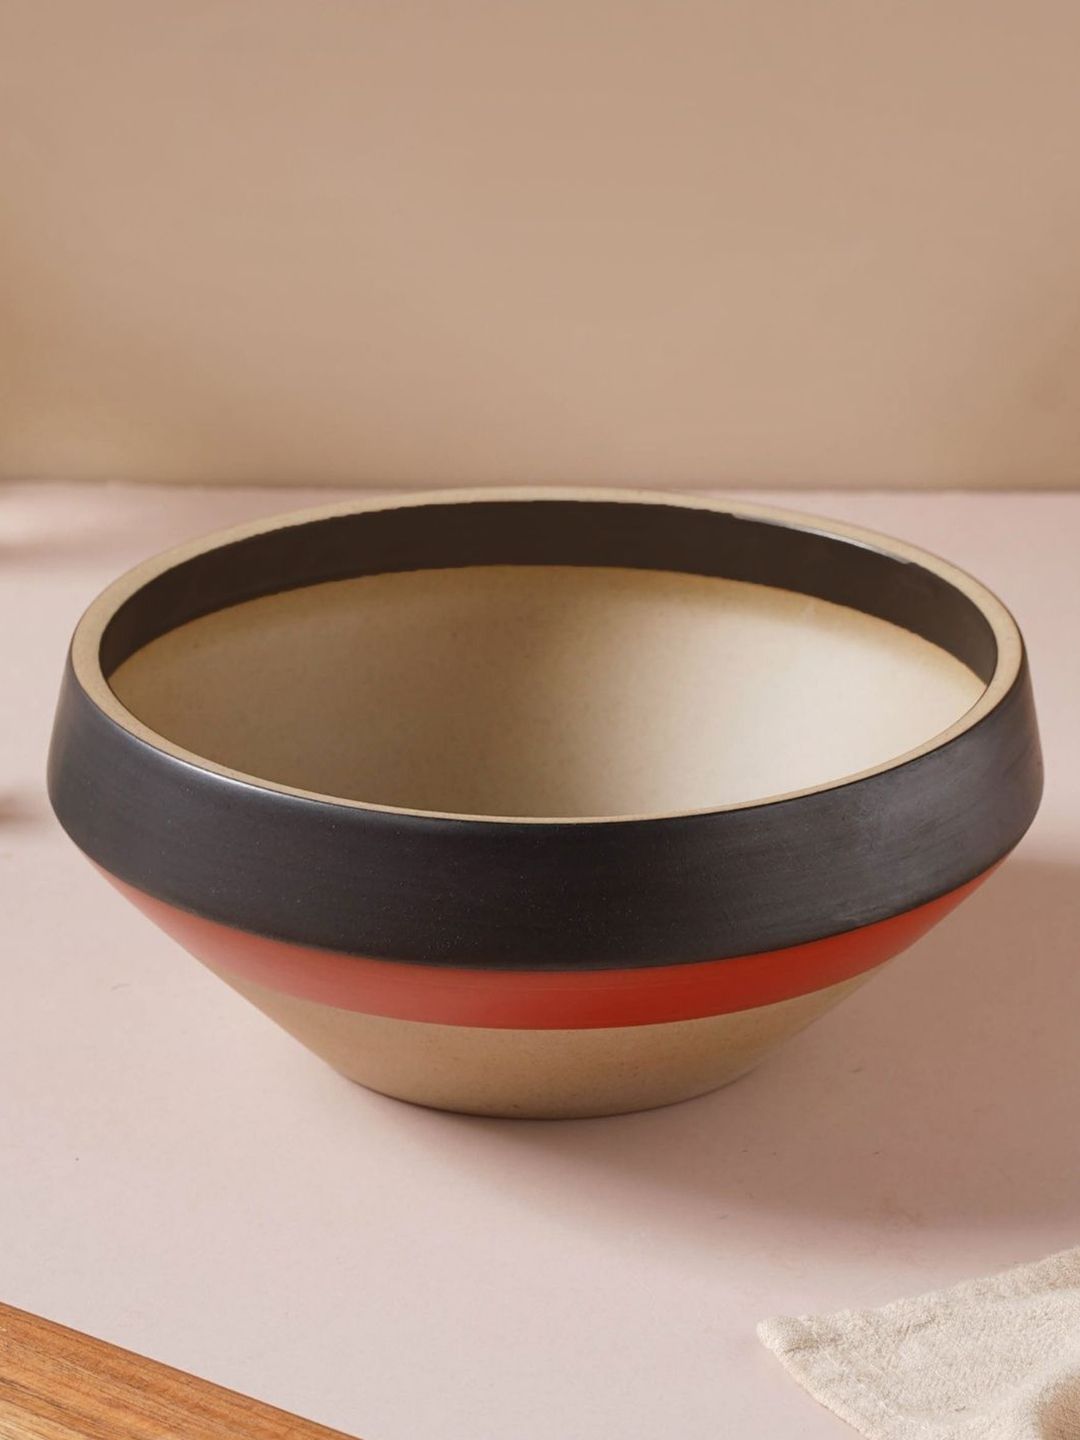 Nestasia Black & Red 1 Pieces Ceramic Matte Bowl Price in India